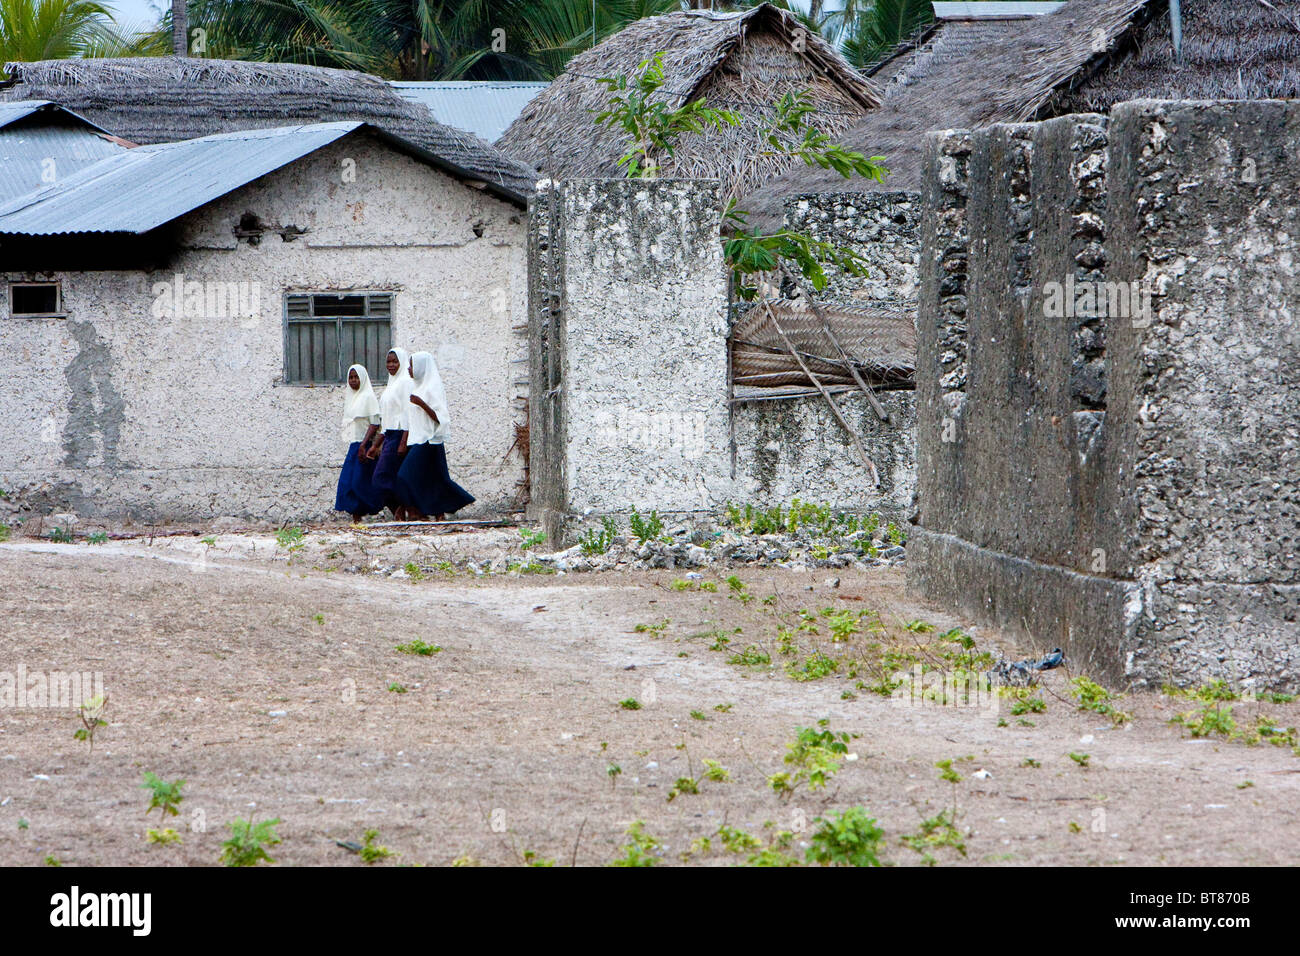 Jambiani, Zanzibar, Tanzania. Muslim Girls Going to School. Stock Photo